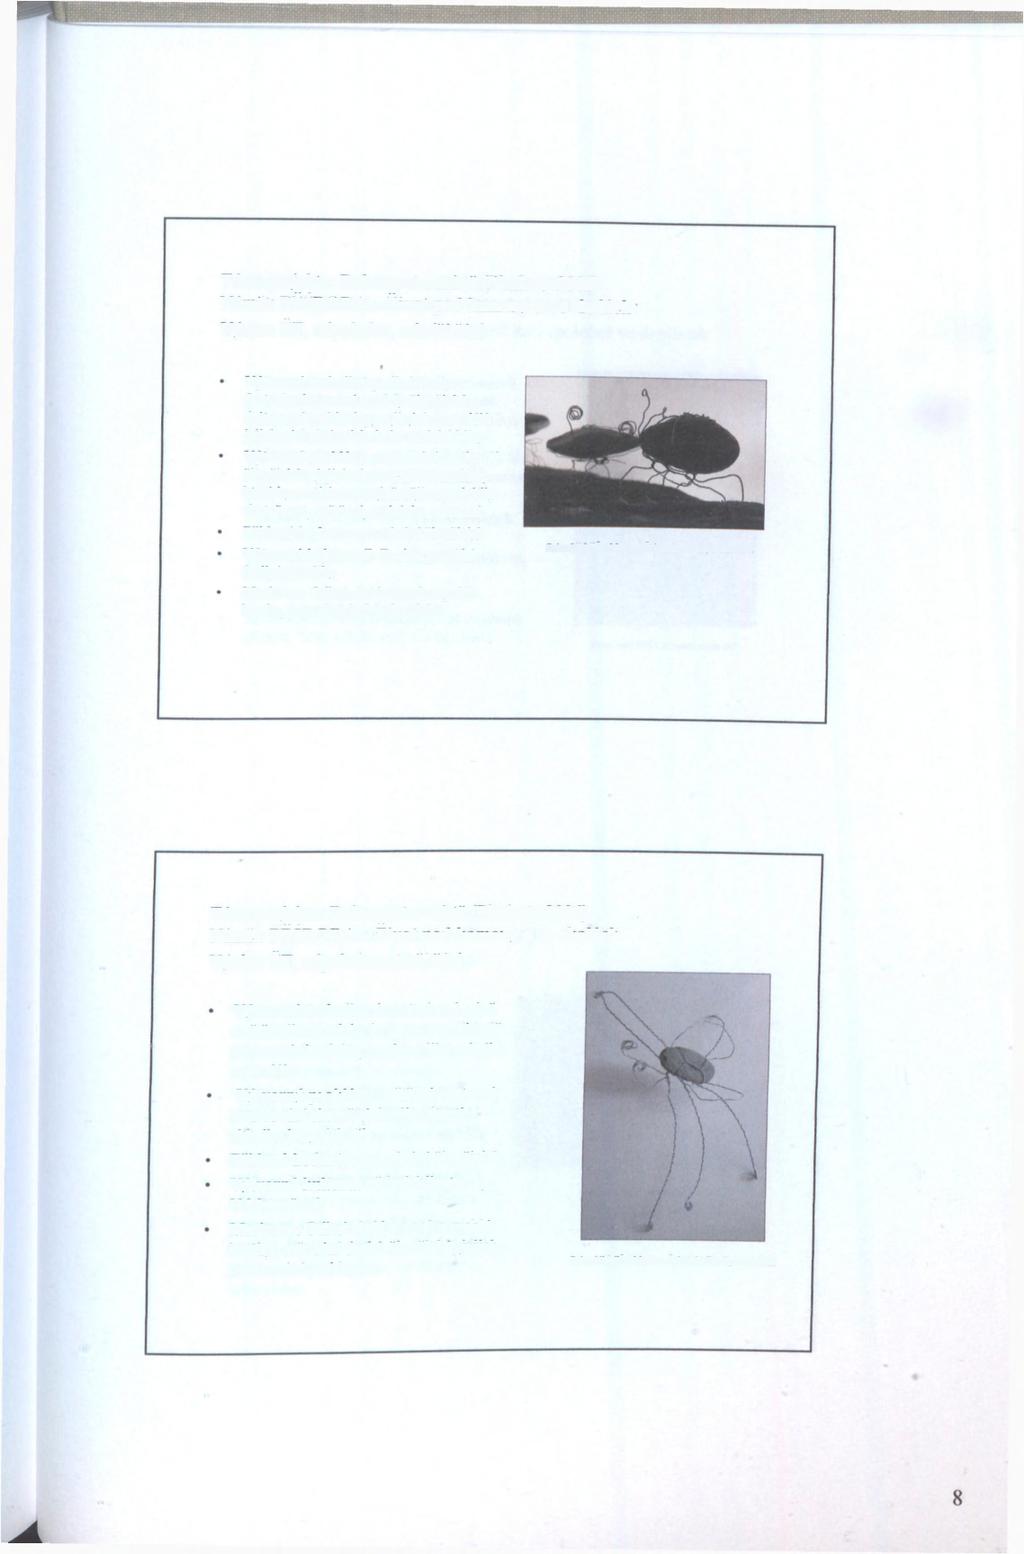 Téma projektu: Dokument o místě (Pleskoty 2006) Námět: PŘÍRODA - Život pod kameny a ve skalách Výuka: ČT, odpoledne, mladší žáci Výtvarná technika: podle kreseb a fantazie zhotovené modely živočichů